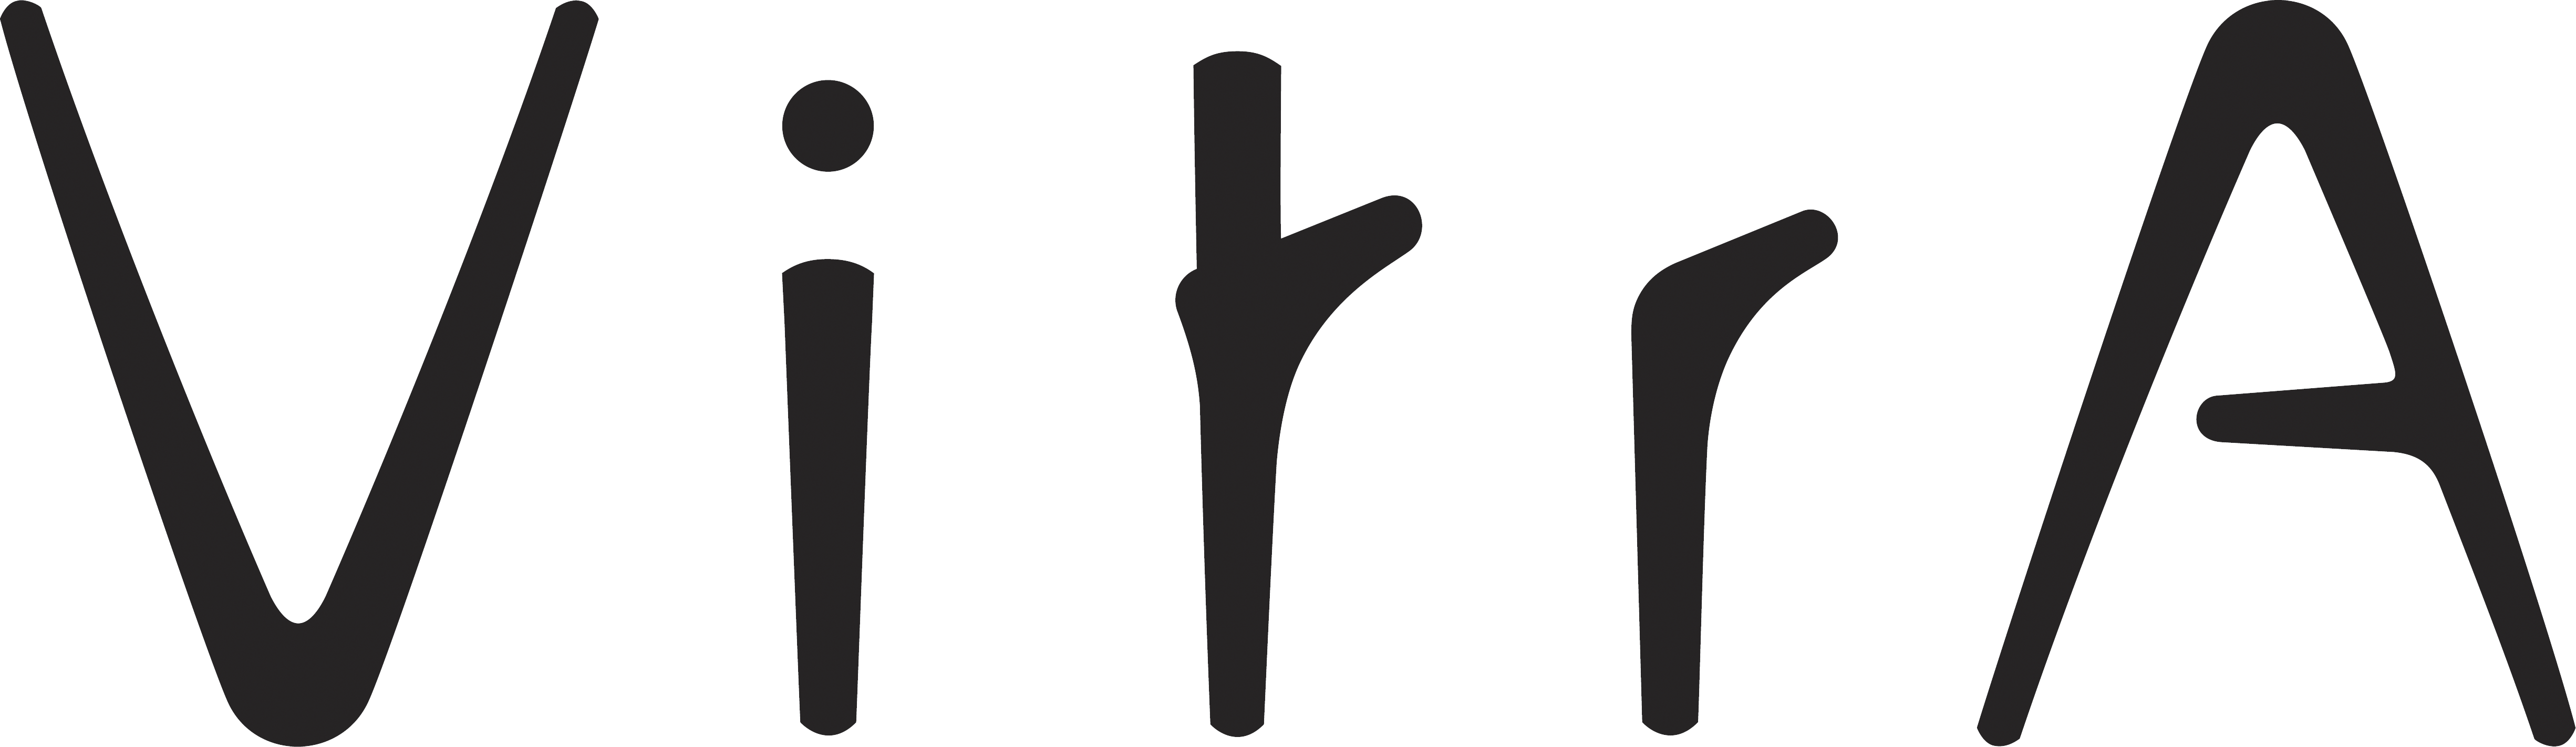 vitra сантехника лого фото